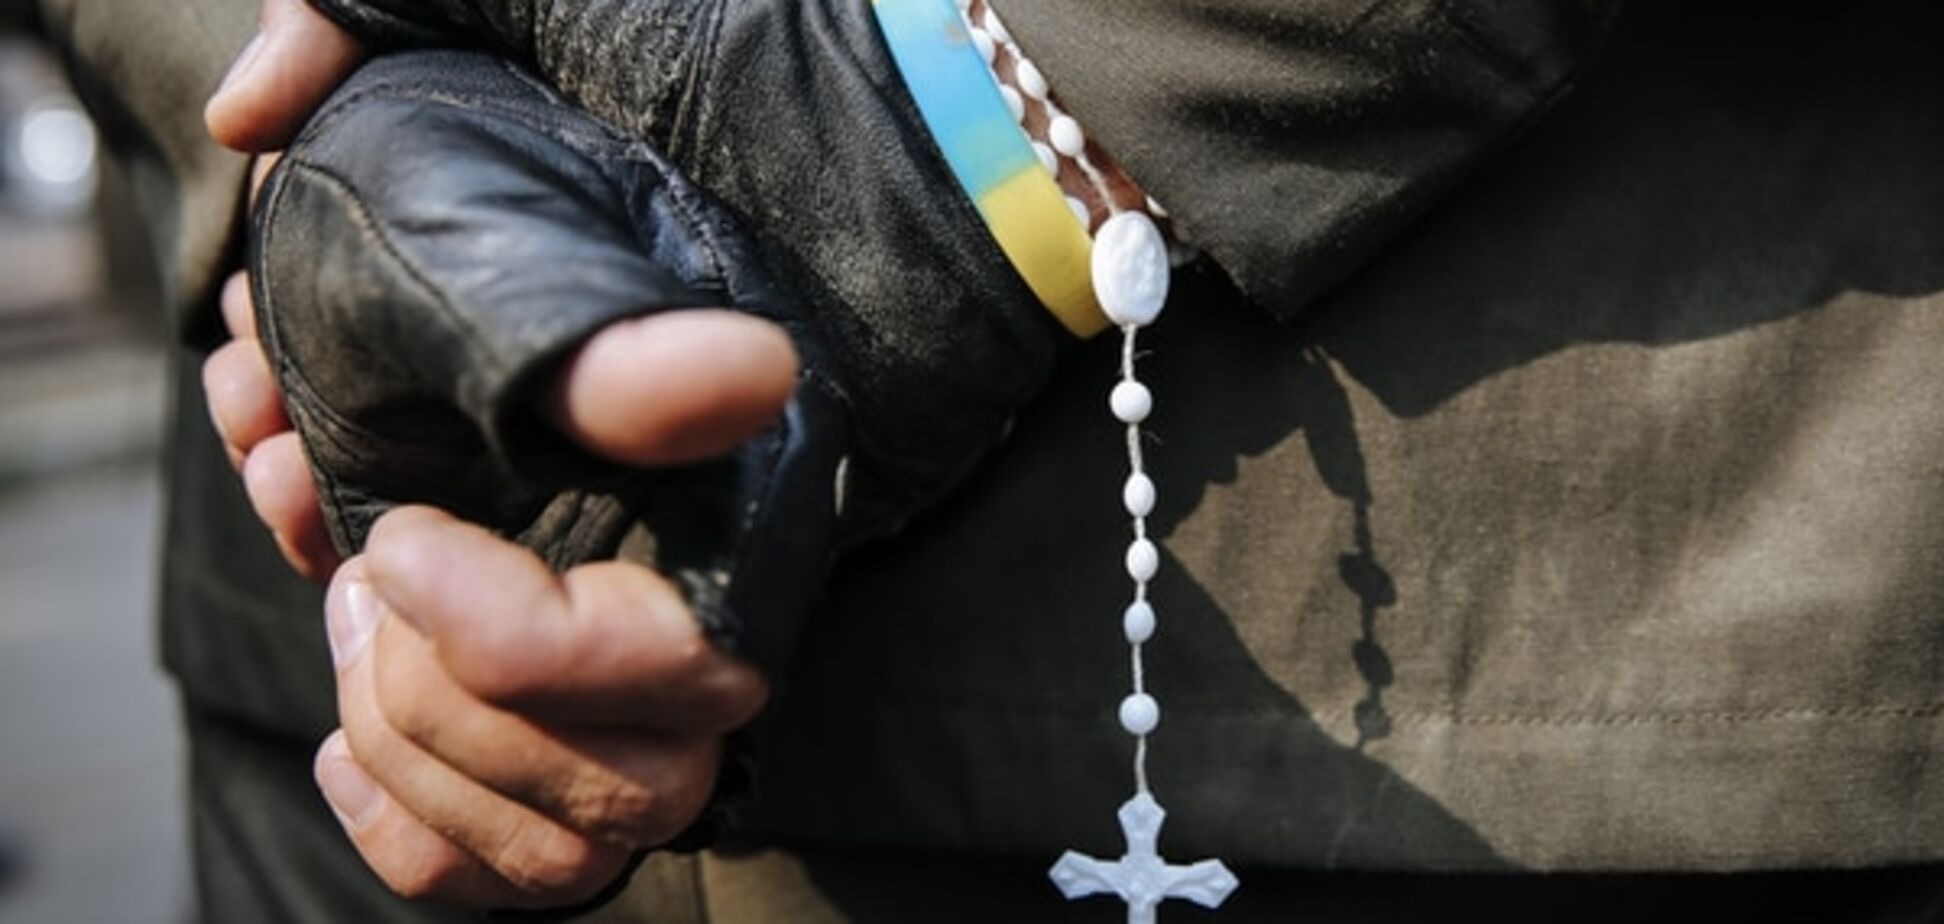 Угроза суицида, алкоголизм и агрессивность: психолог о проблемах бойцов АТО после Донбасса